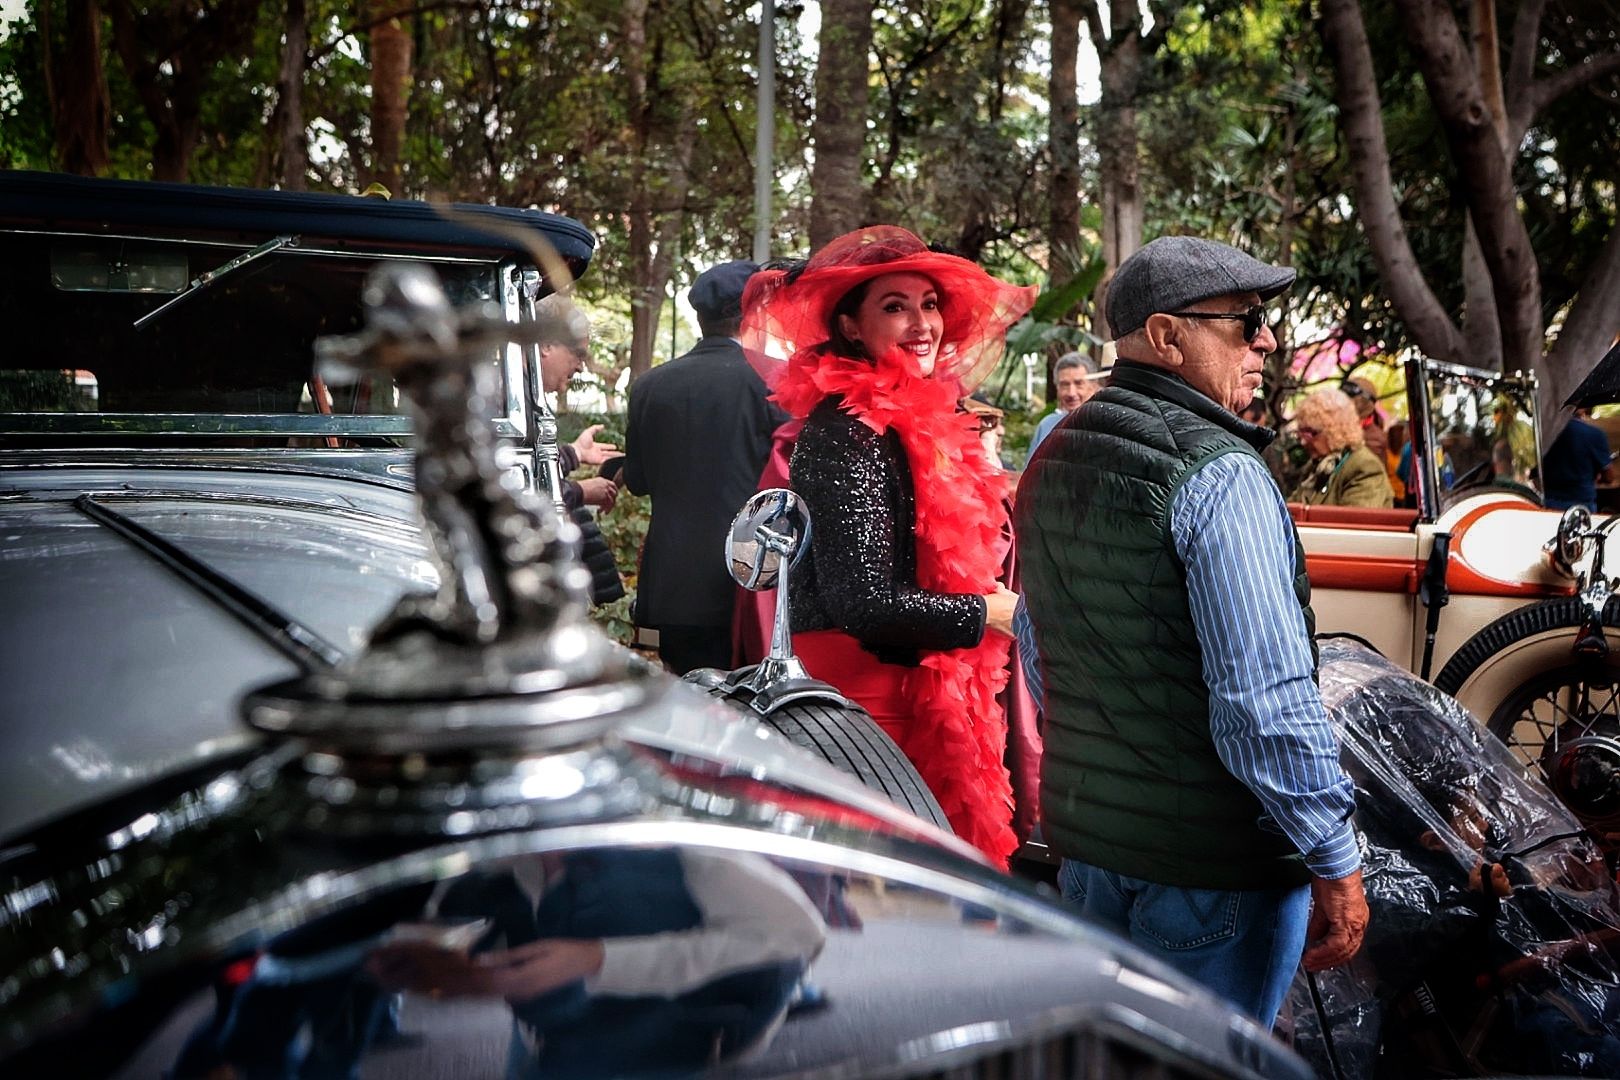 Exhibición de coches antiguos en el Carnaval de Santa Cruz de Tenerife